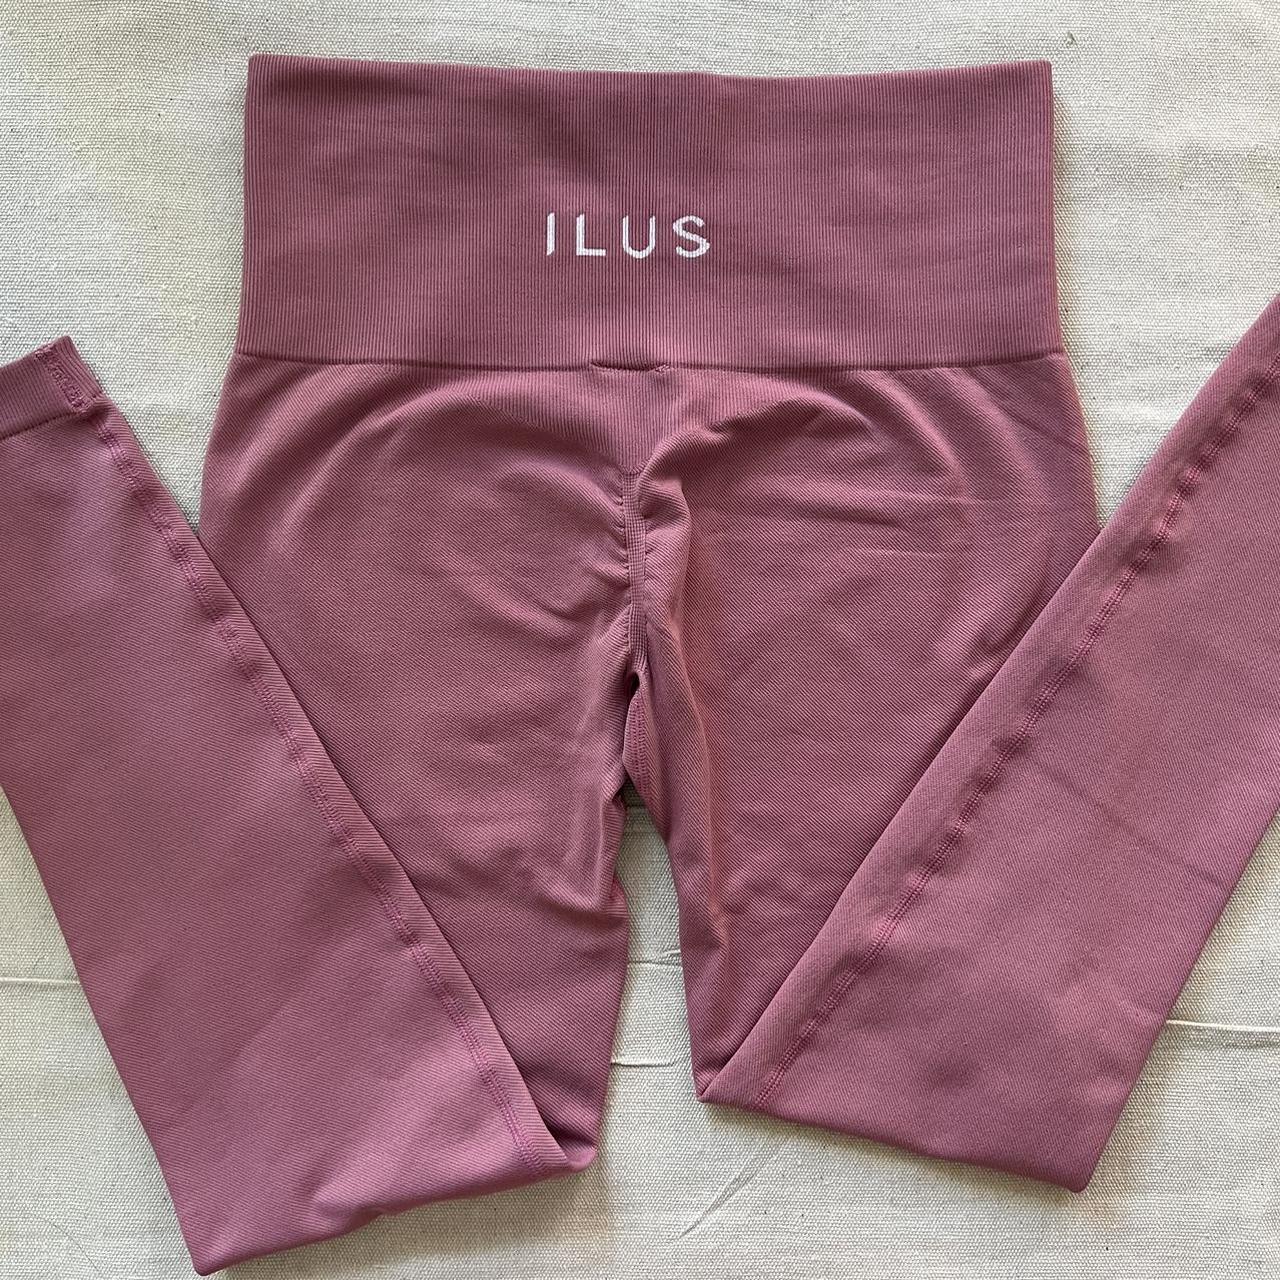 ILUS LABEL seamlux intensify leggings in pink - Depop